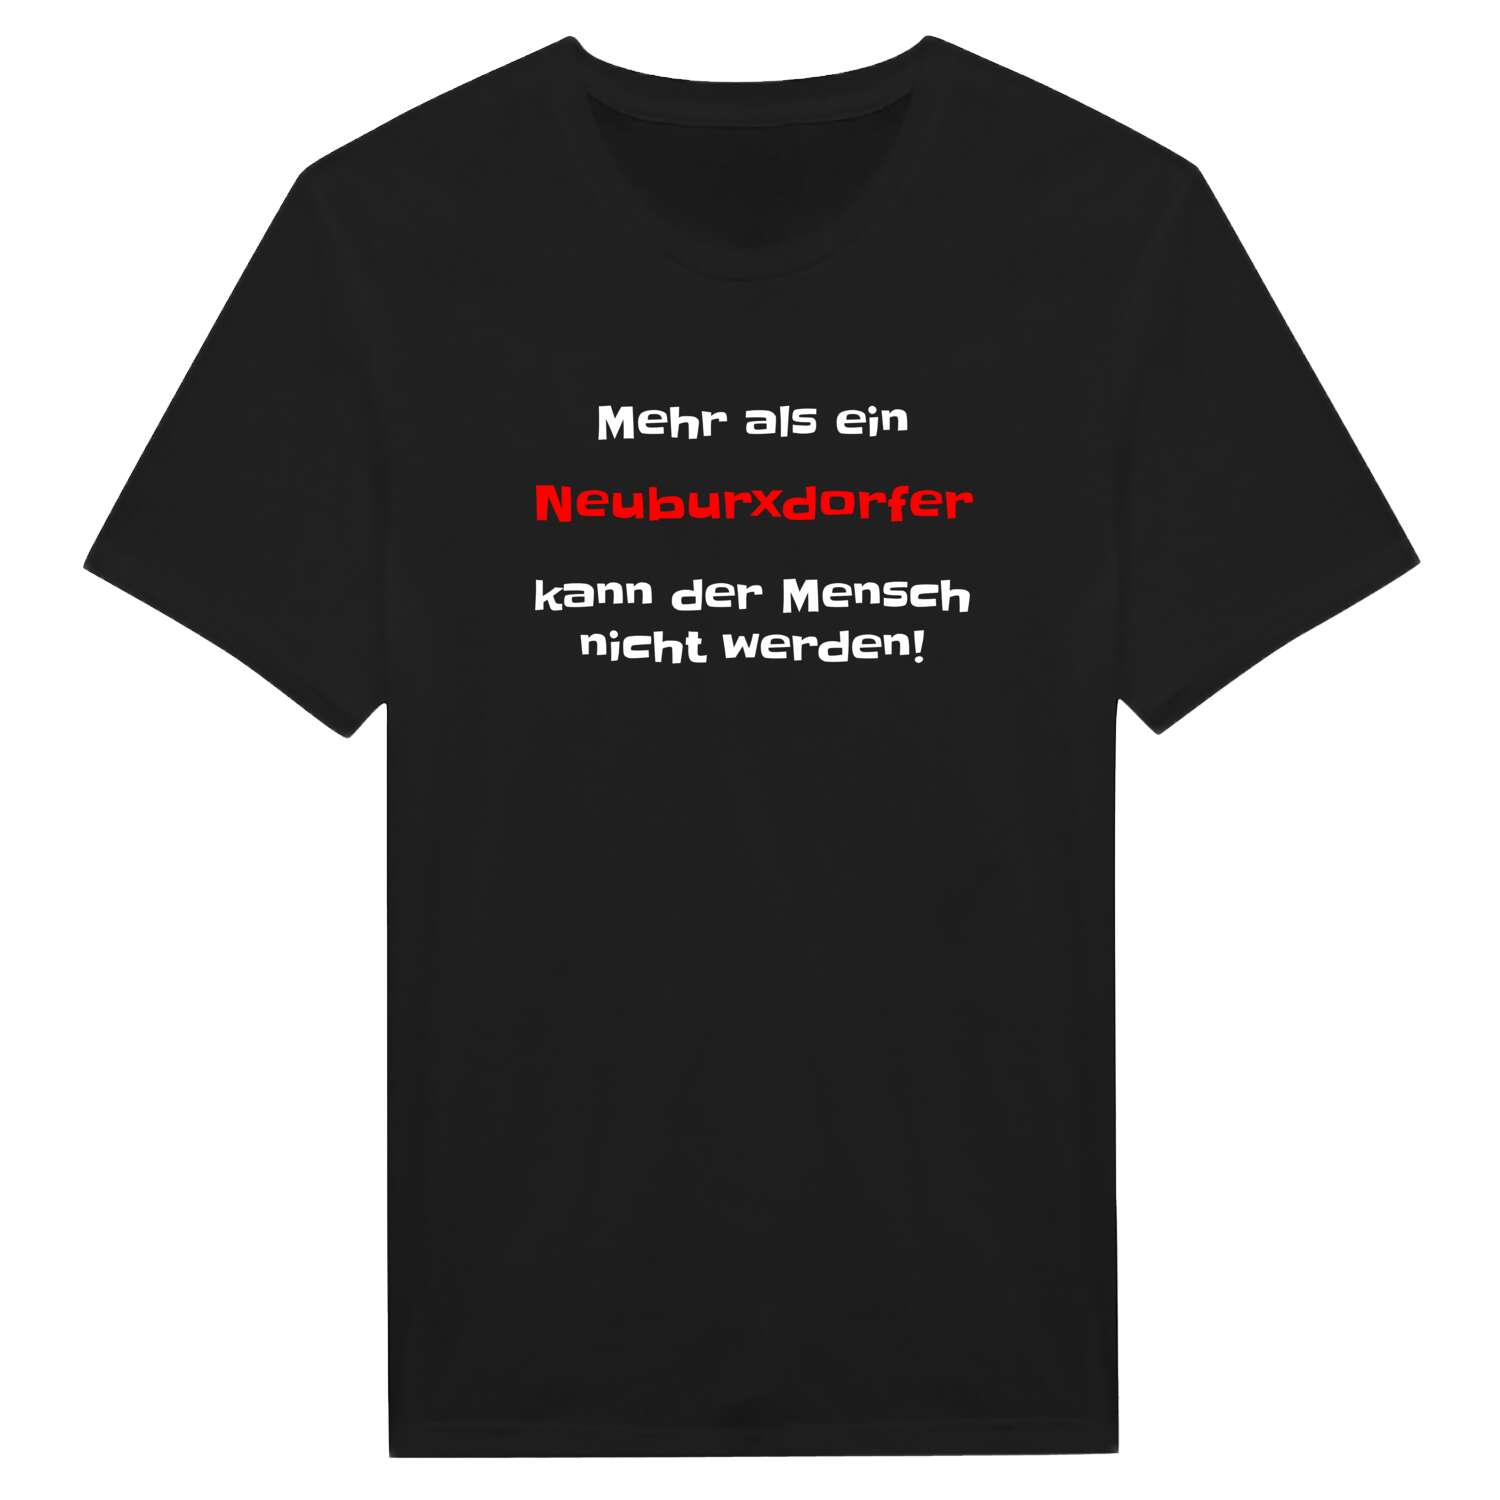 Neuburxdorf T-Shirt »Mehr als ein«